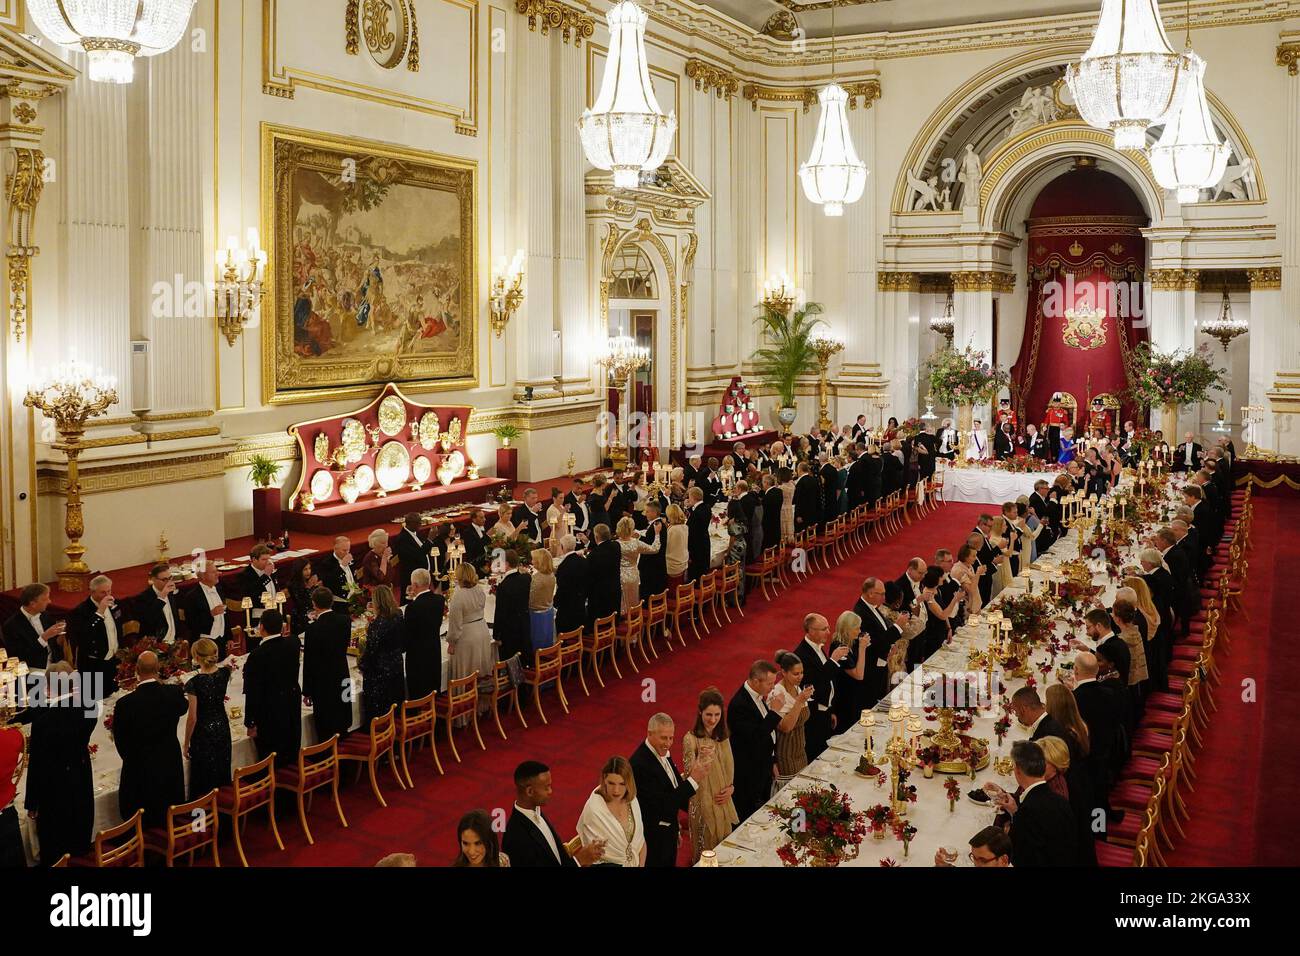 Les clients se tiennent au banquet d'État de Buckingham Palace, Londres, lors de la visite d'État au Royaume-Uni par le président Cyril Ramaphosa d'Afrique du Sud. Date de la photo: Mardi 22 novembre 2022. Banque D'Images